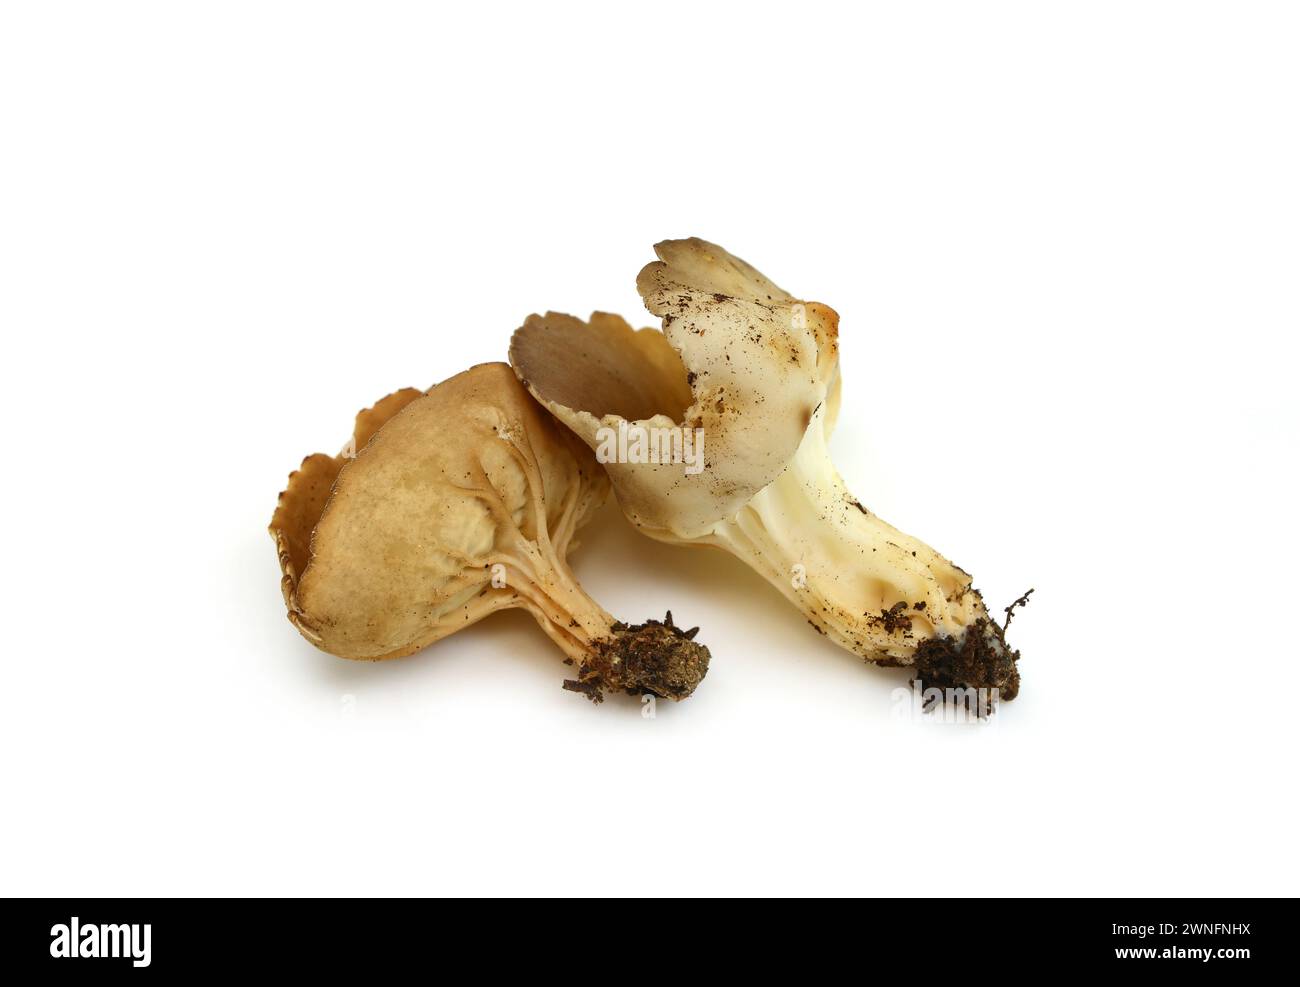 peziza sp. mushroom isolated on white Stock Photo